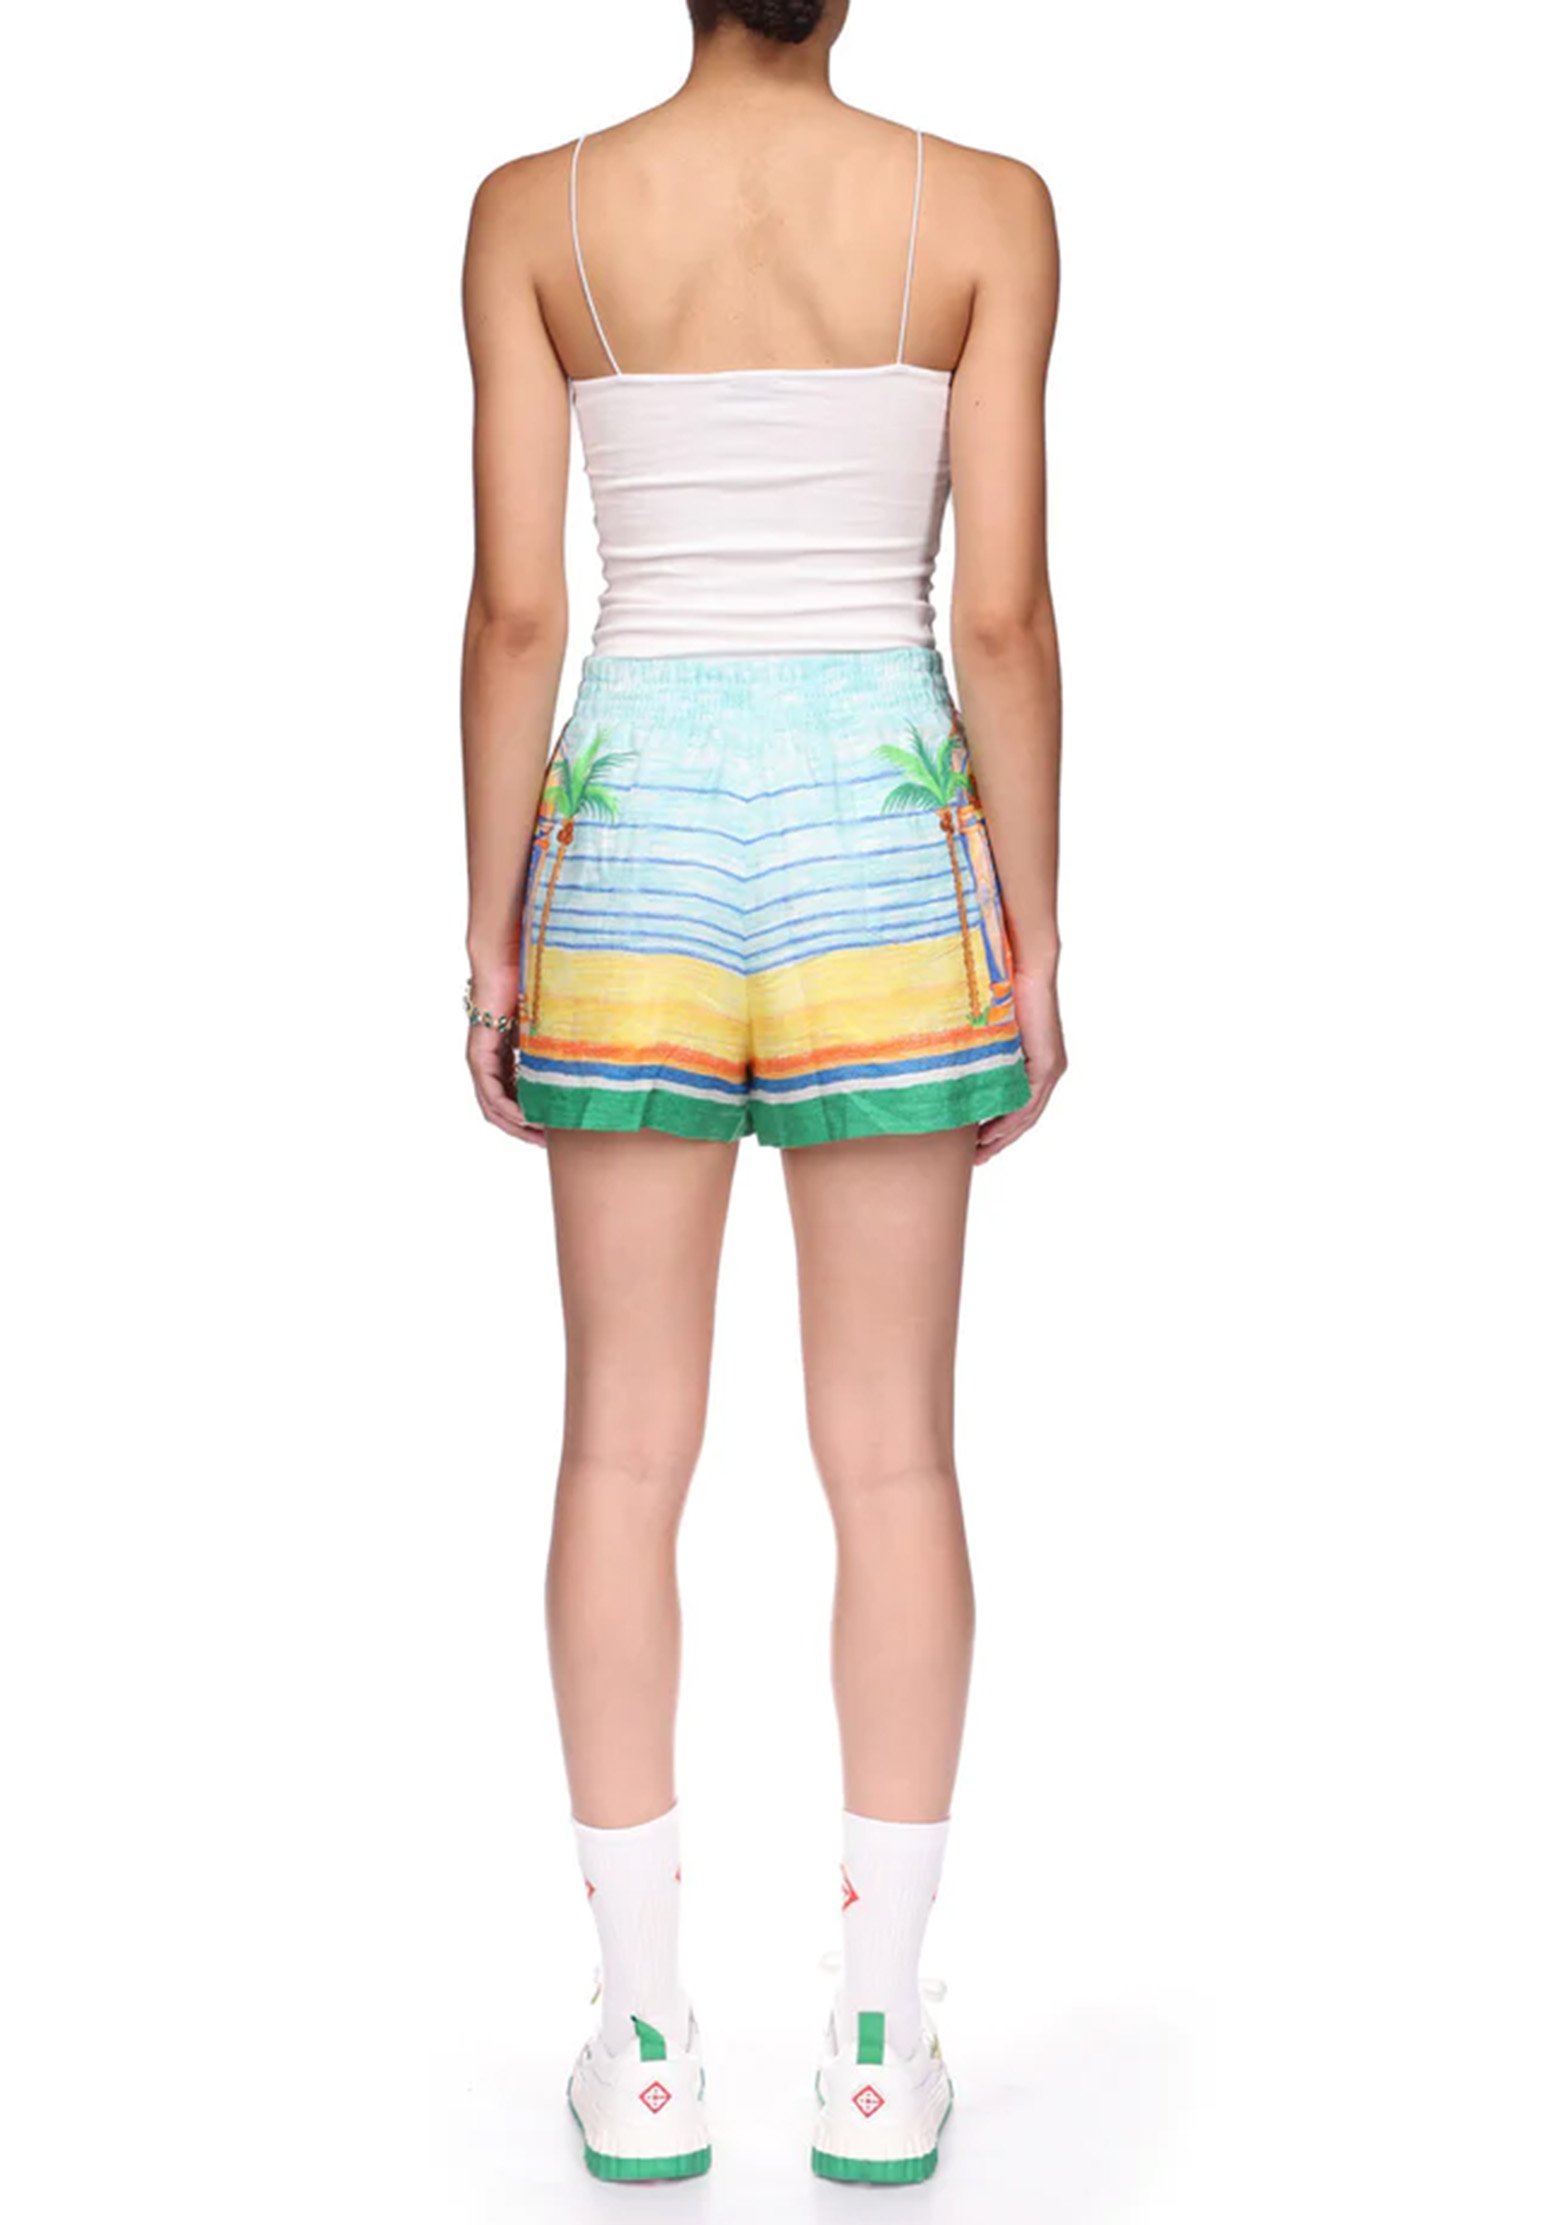 Shorts CASABLANCA Color: multicolor (Code: 4014) in online store Allure